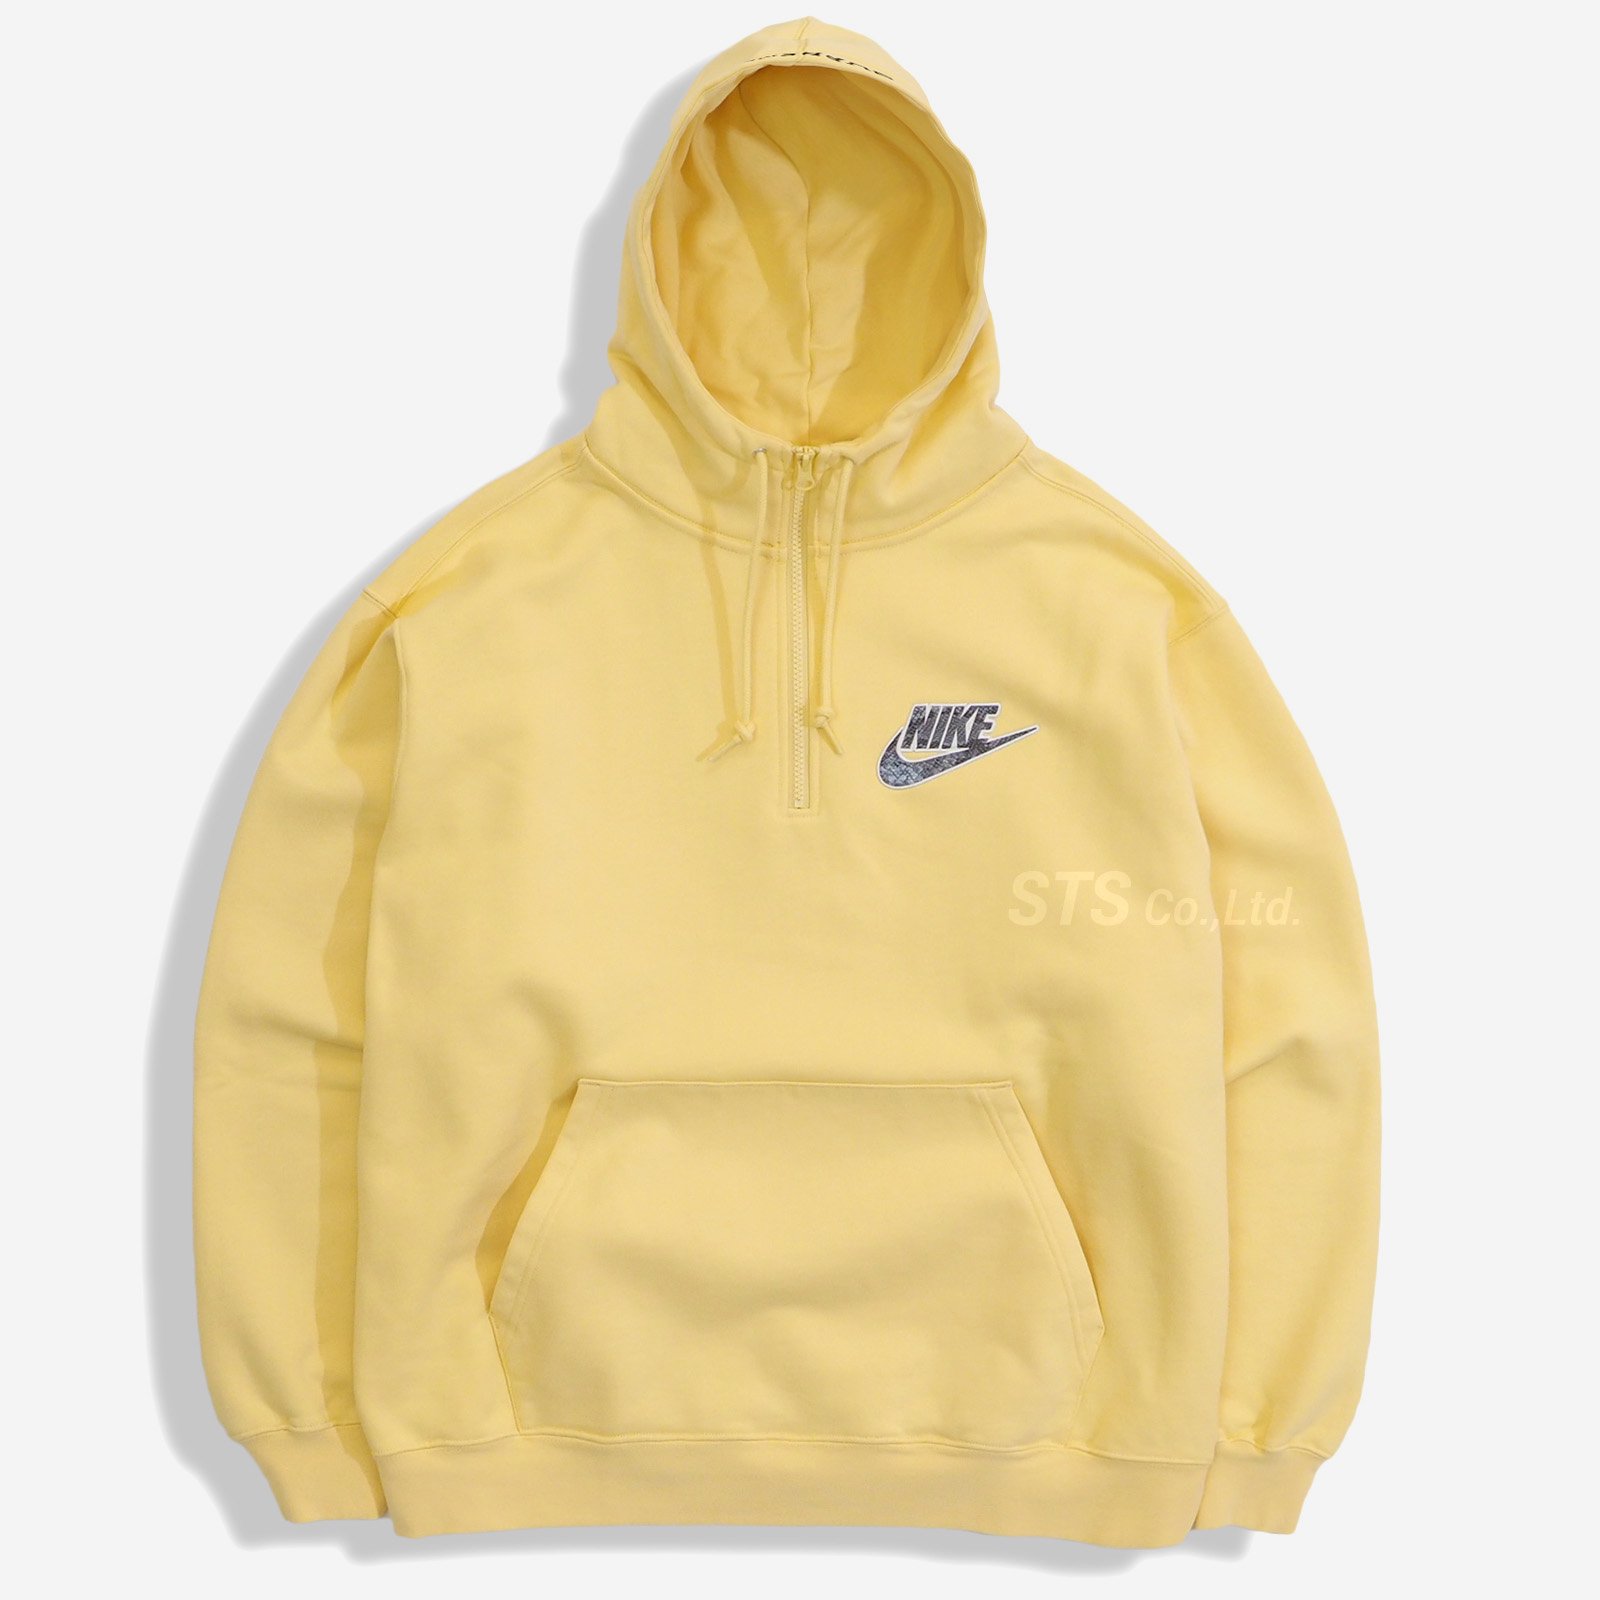 Supreme/Nike Half Zip Hooded Sweatshirt - UG.SHAFT